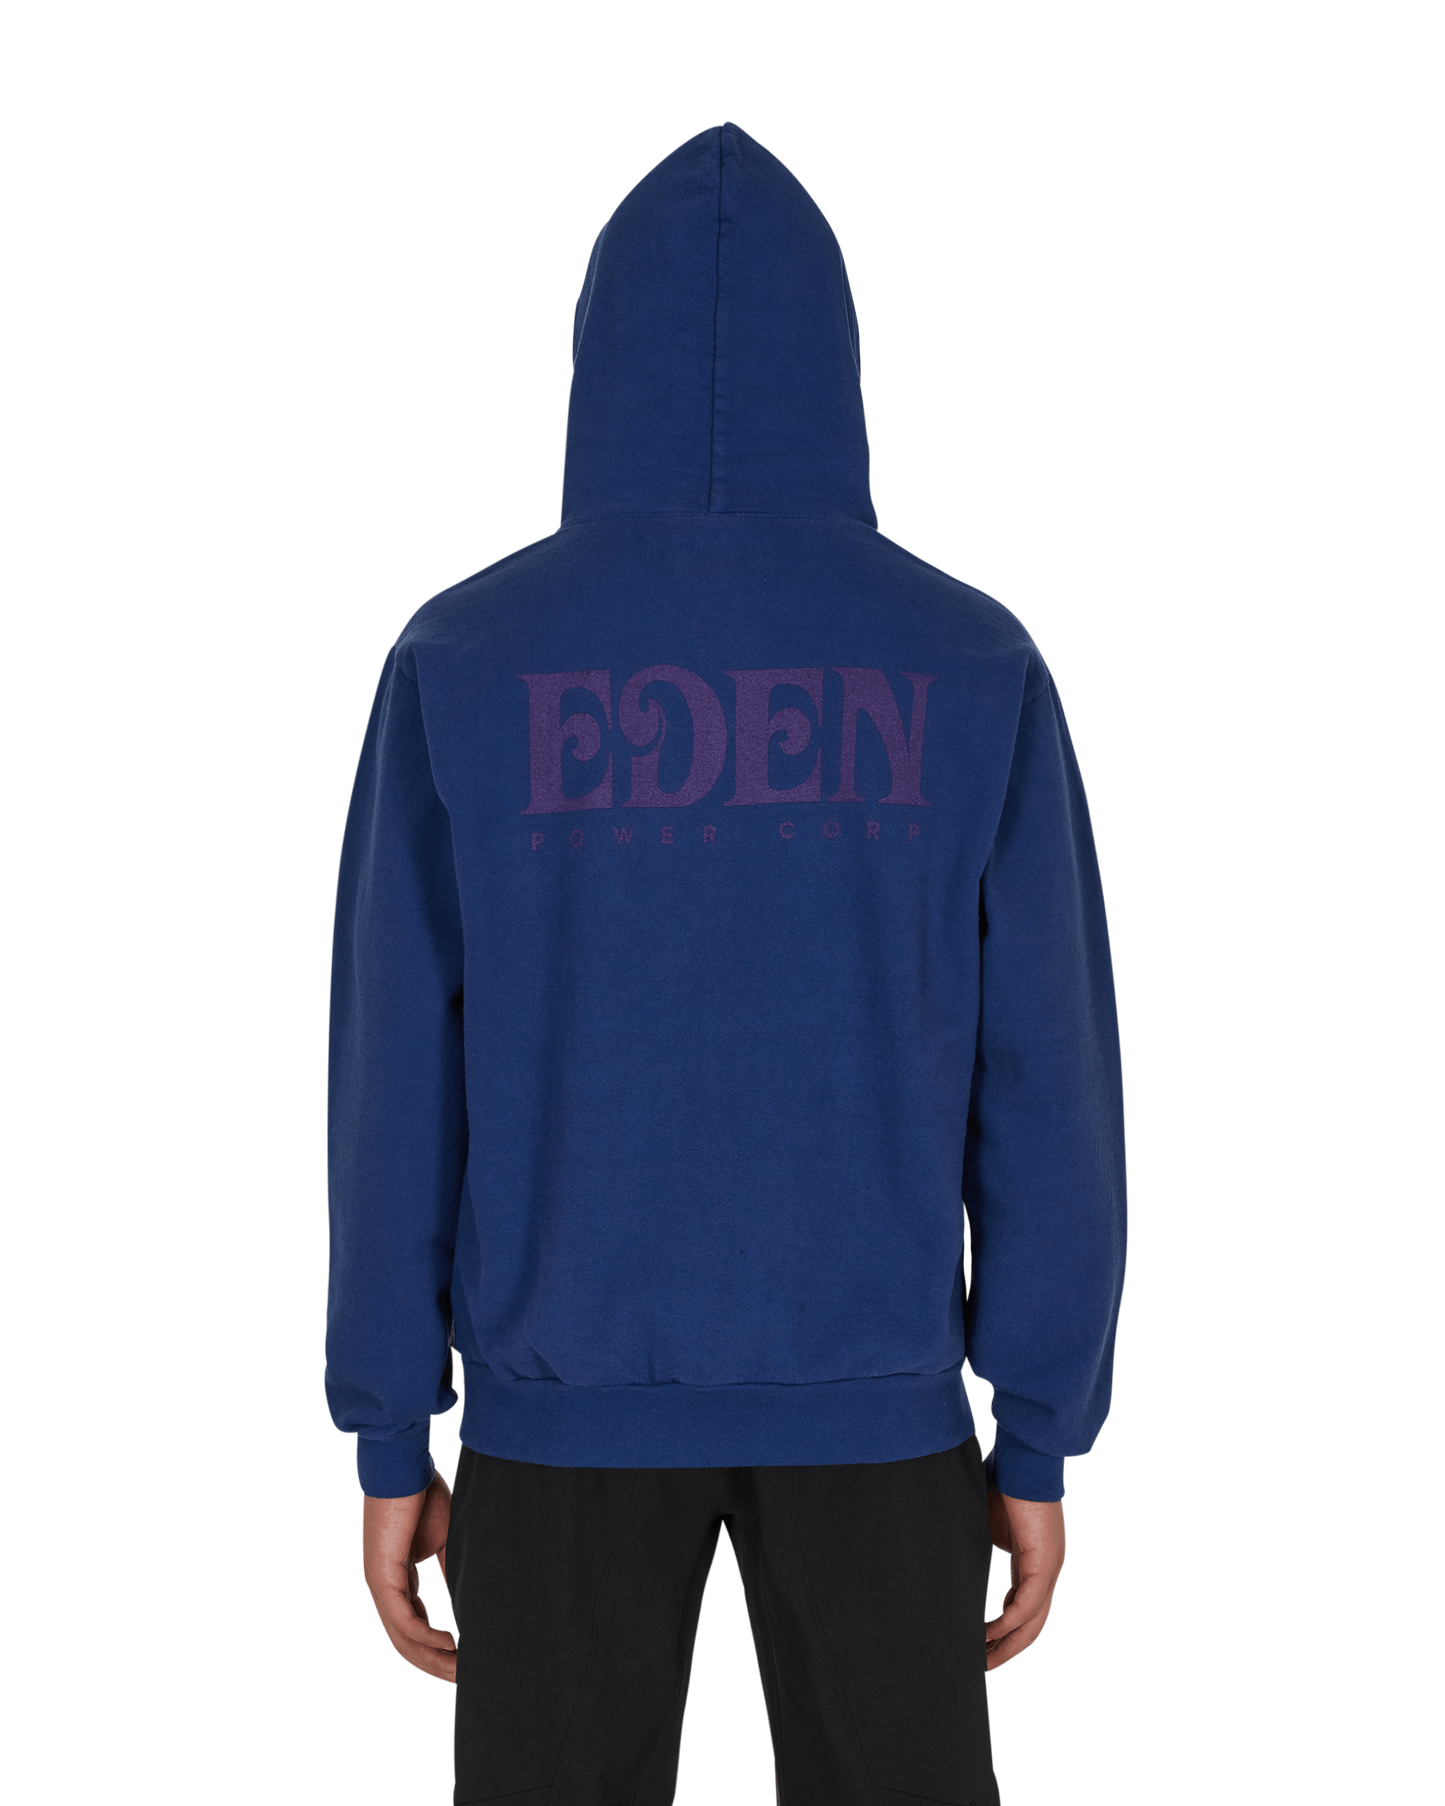 Eden Power Corp Eden Hoodie Recycled Blue/Navy Sweatshirts Hoodies FW21028 BUN